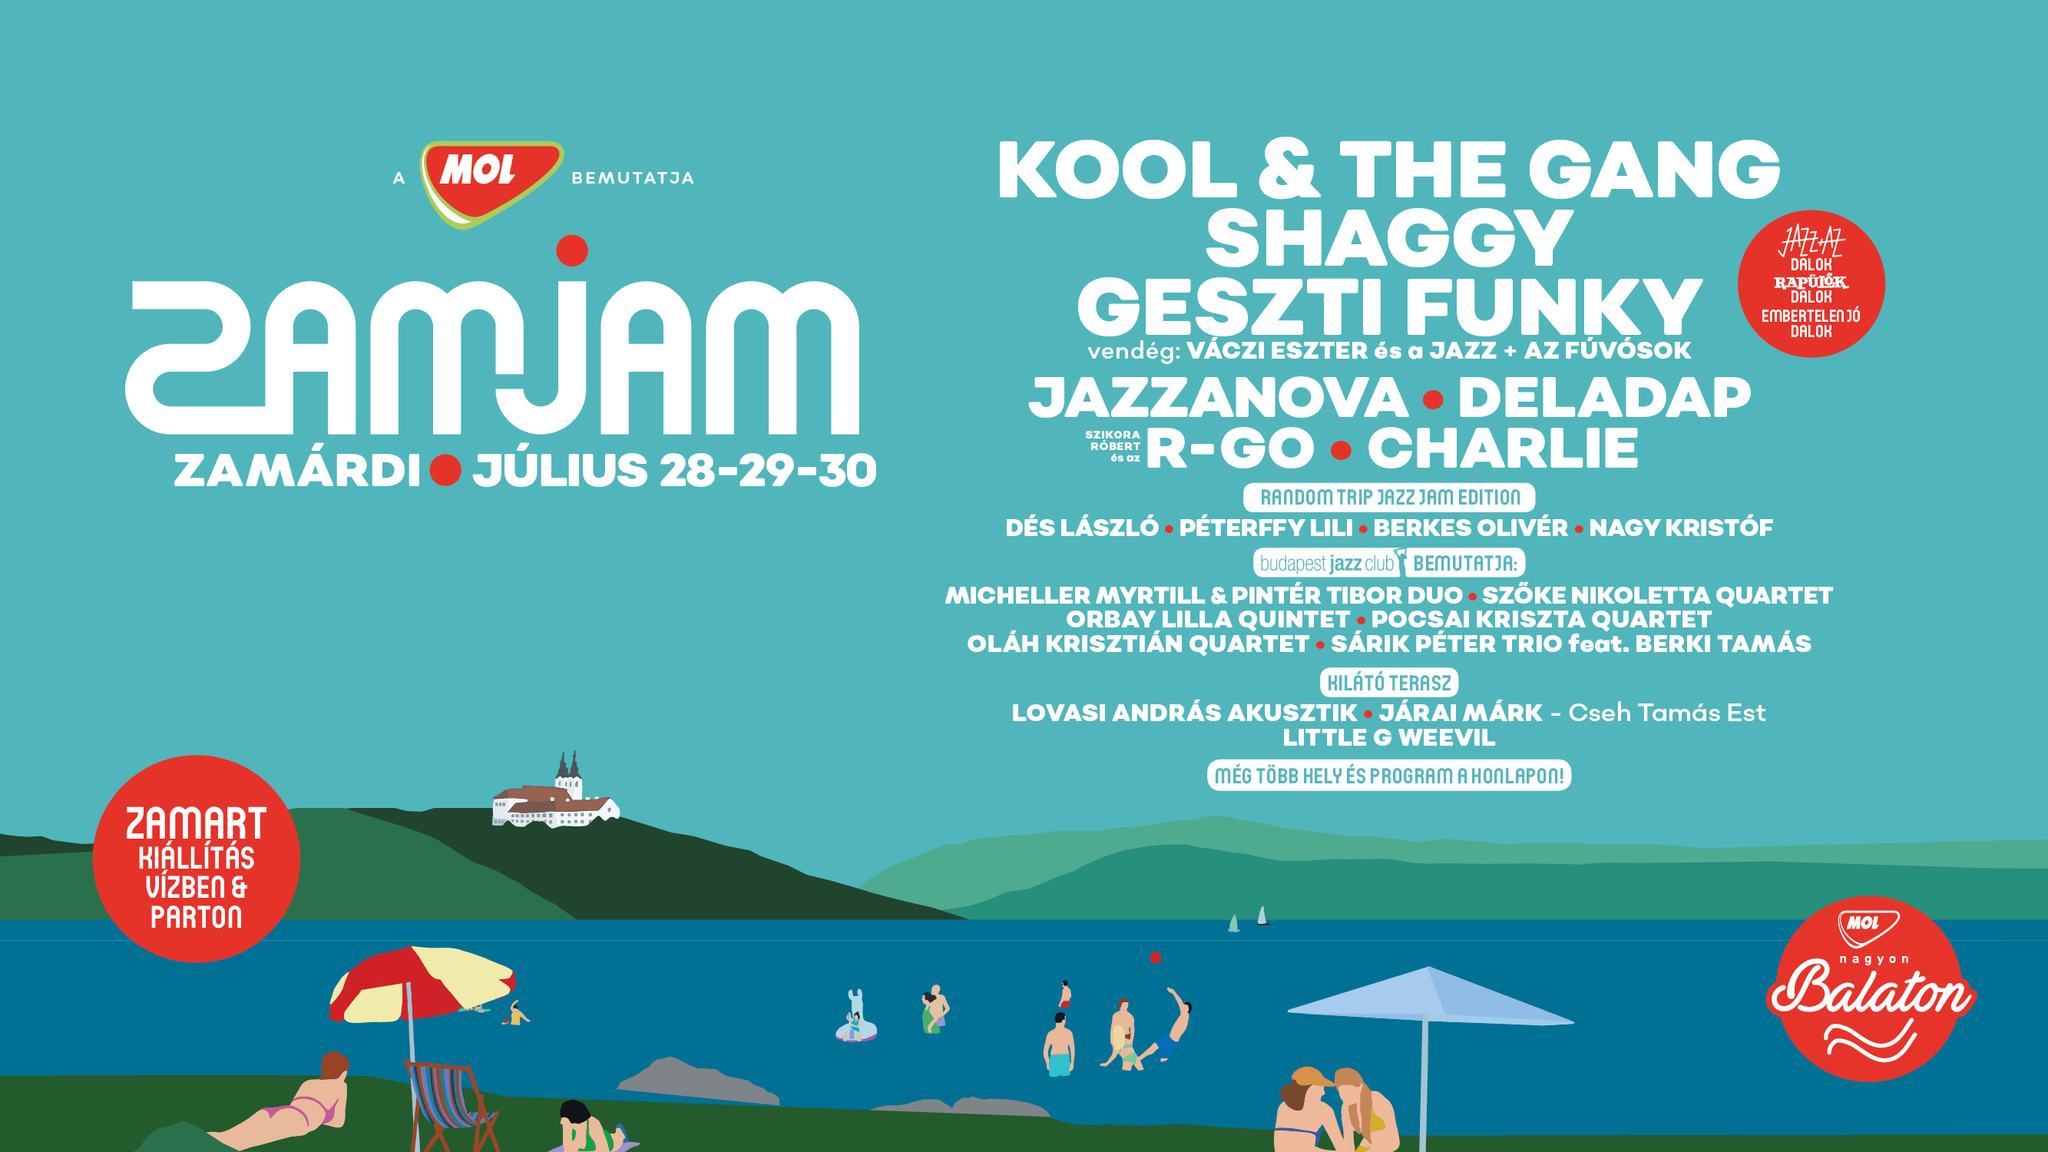 'Zam Jam Fest', Zamárdi, 28 – 30 July